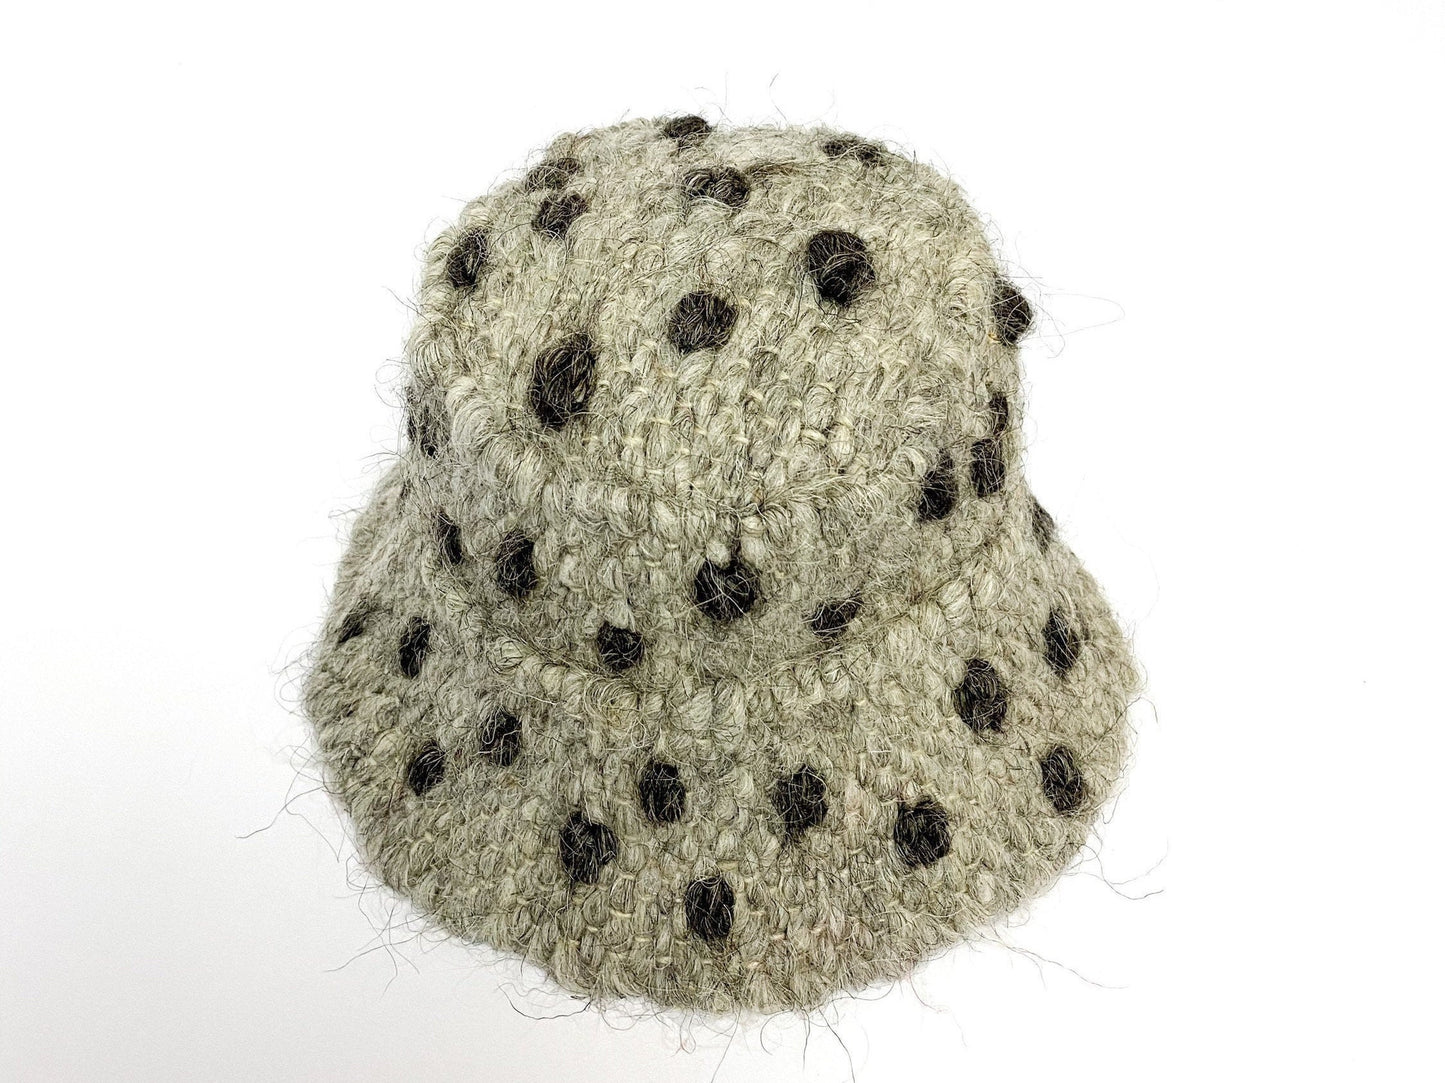 Polka Dots Wool Bucket Hat